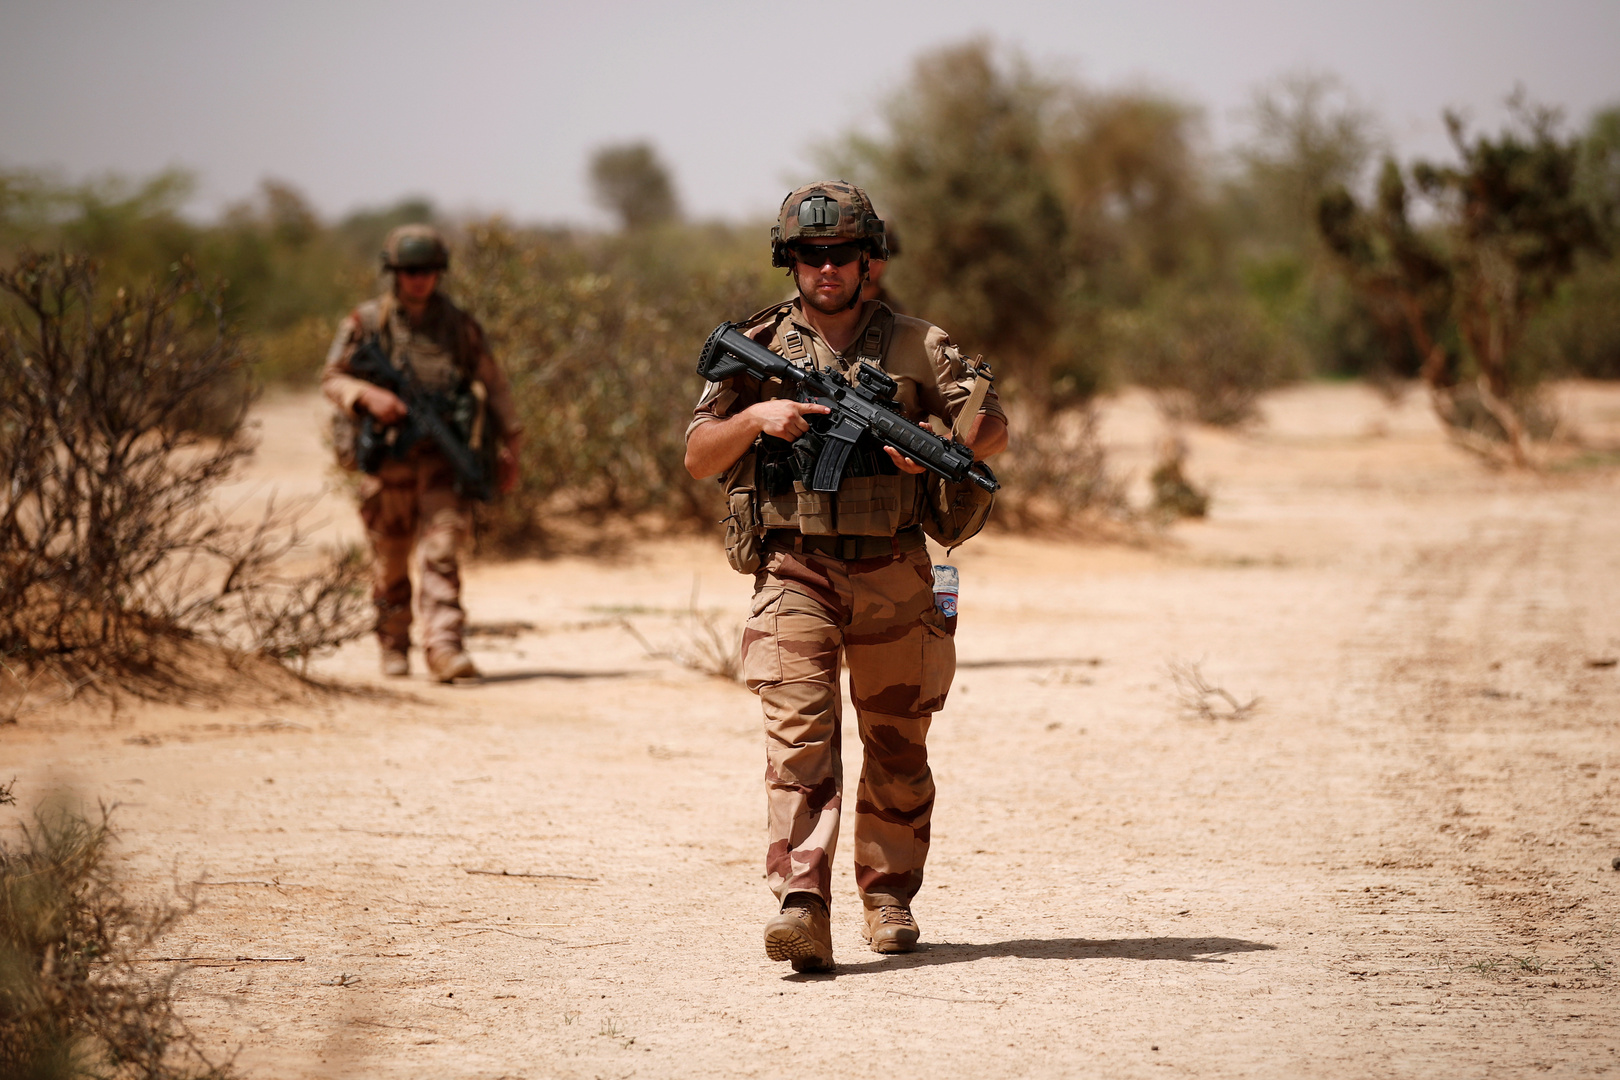 الجيش الفرنسي: مقتل أكثر من 30 متشددا إسلاميا في مالي خلال 3 عمليات منفصلة يومي الخميس والجمعة